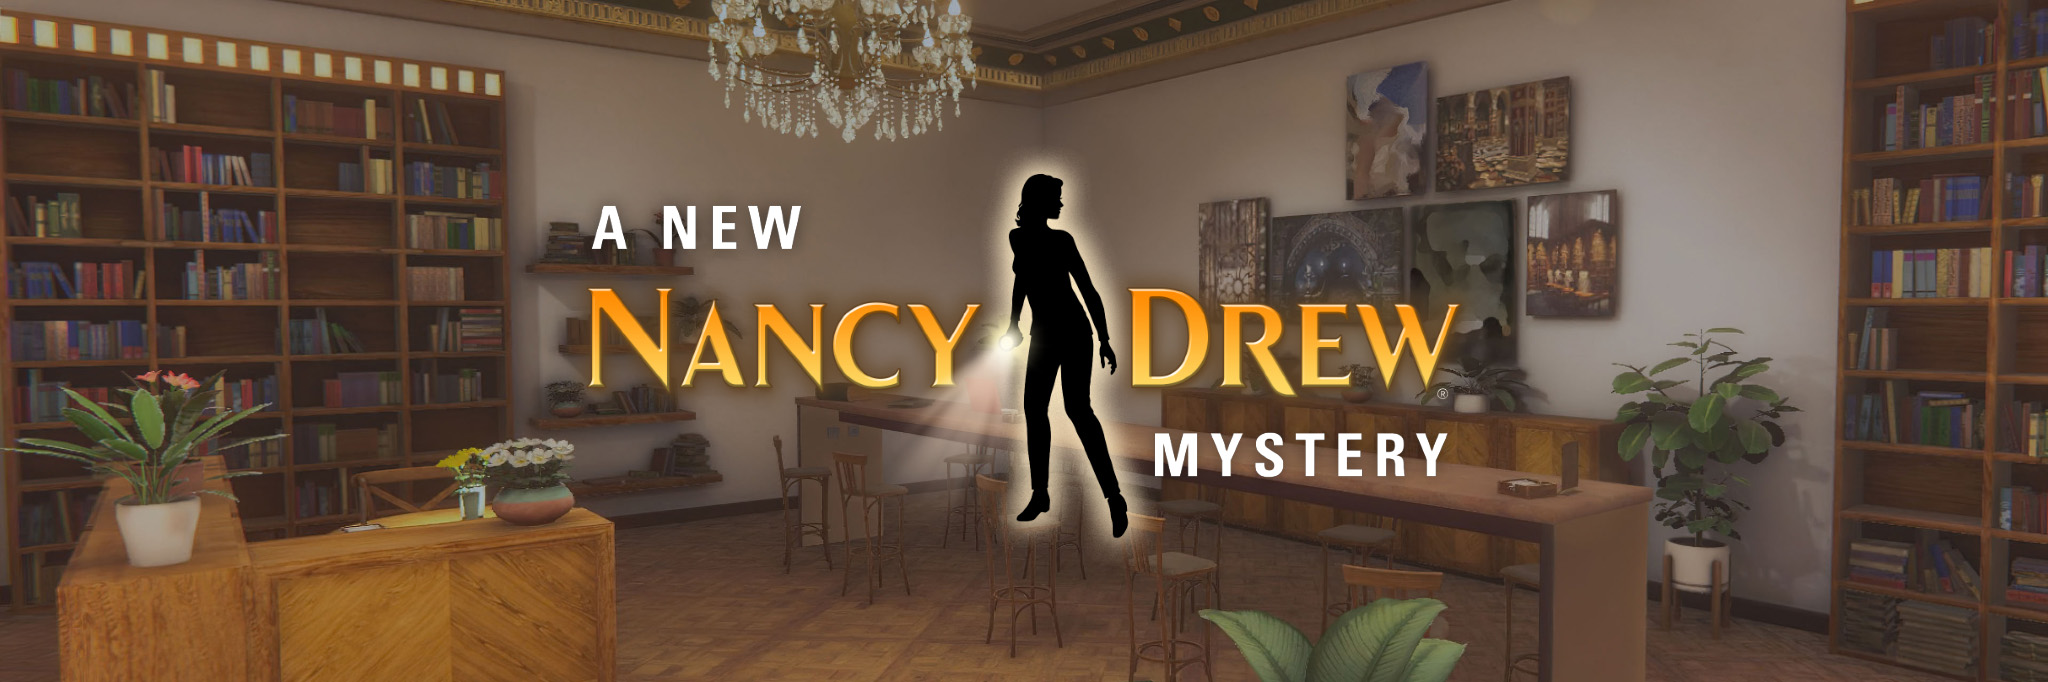 A New Nancy Drew Mystery!